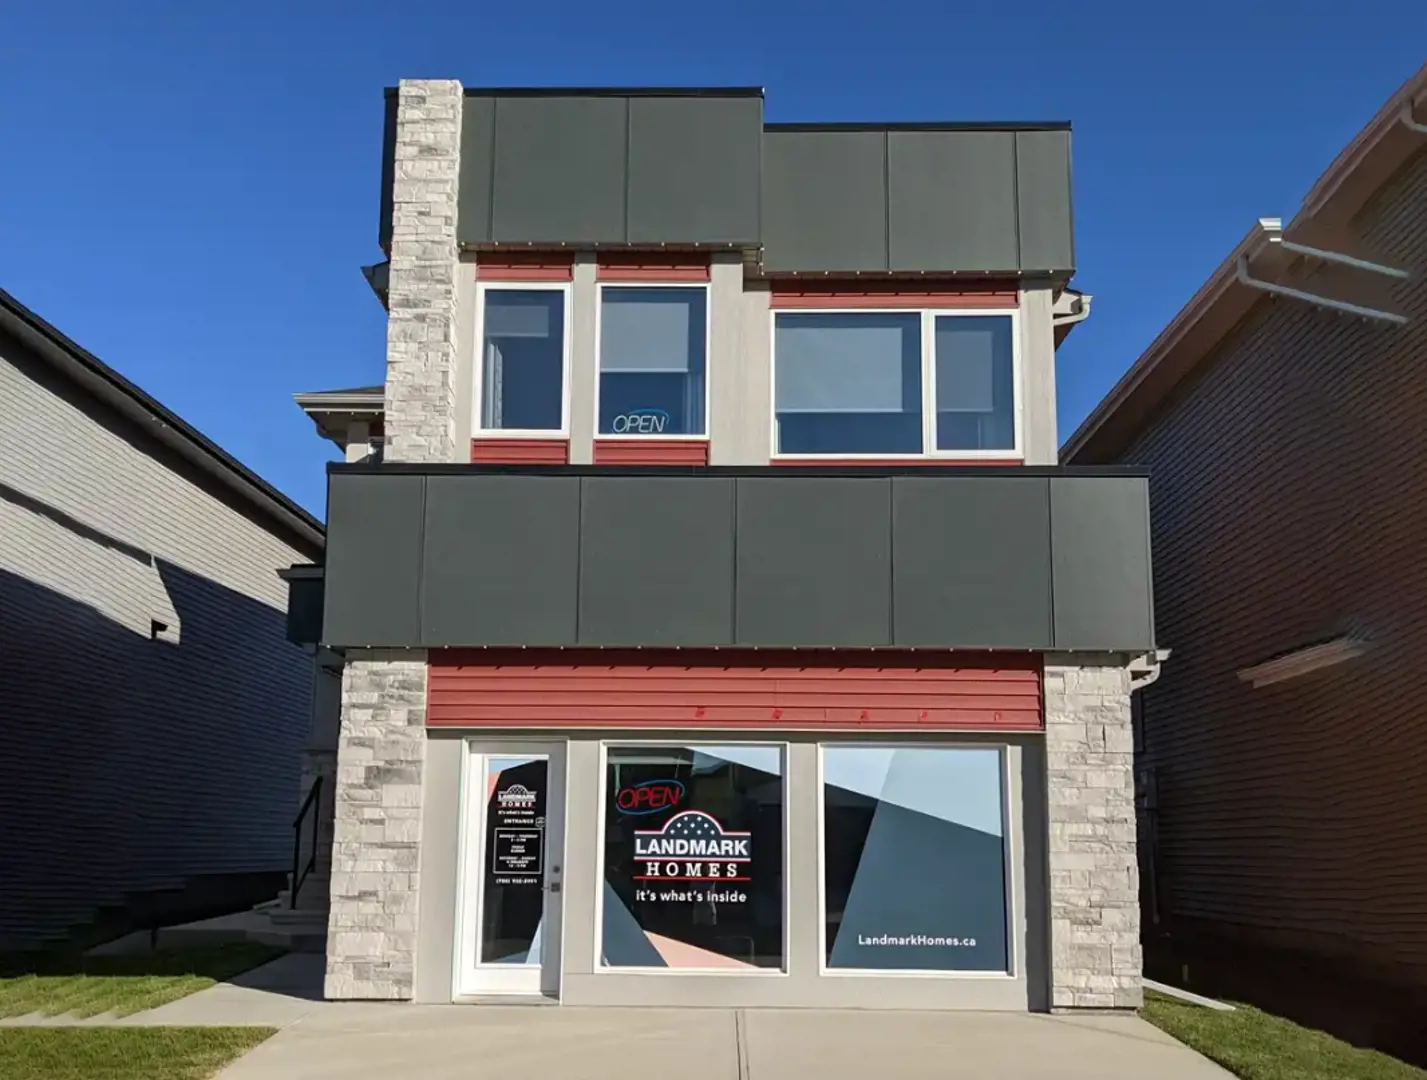 Aster Landmark Homes located at 17 Street & 19 Avenue, Edmonton, AB image